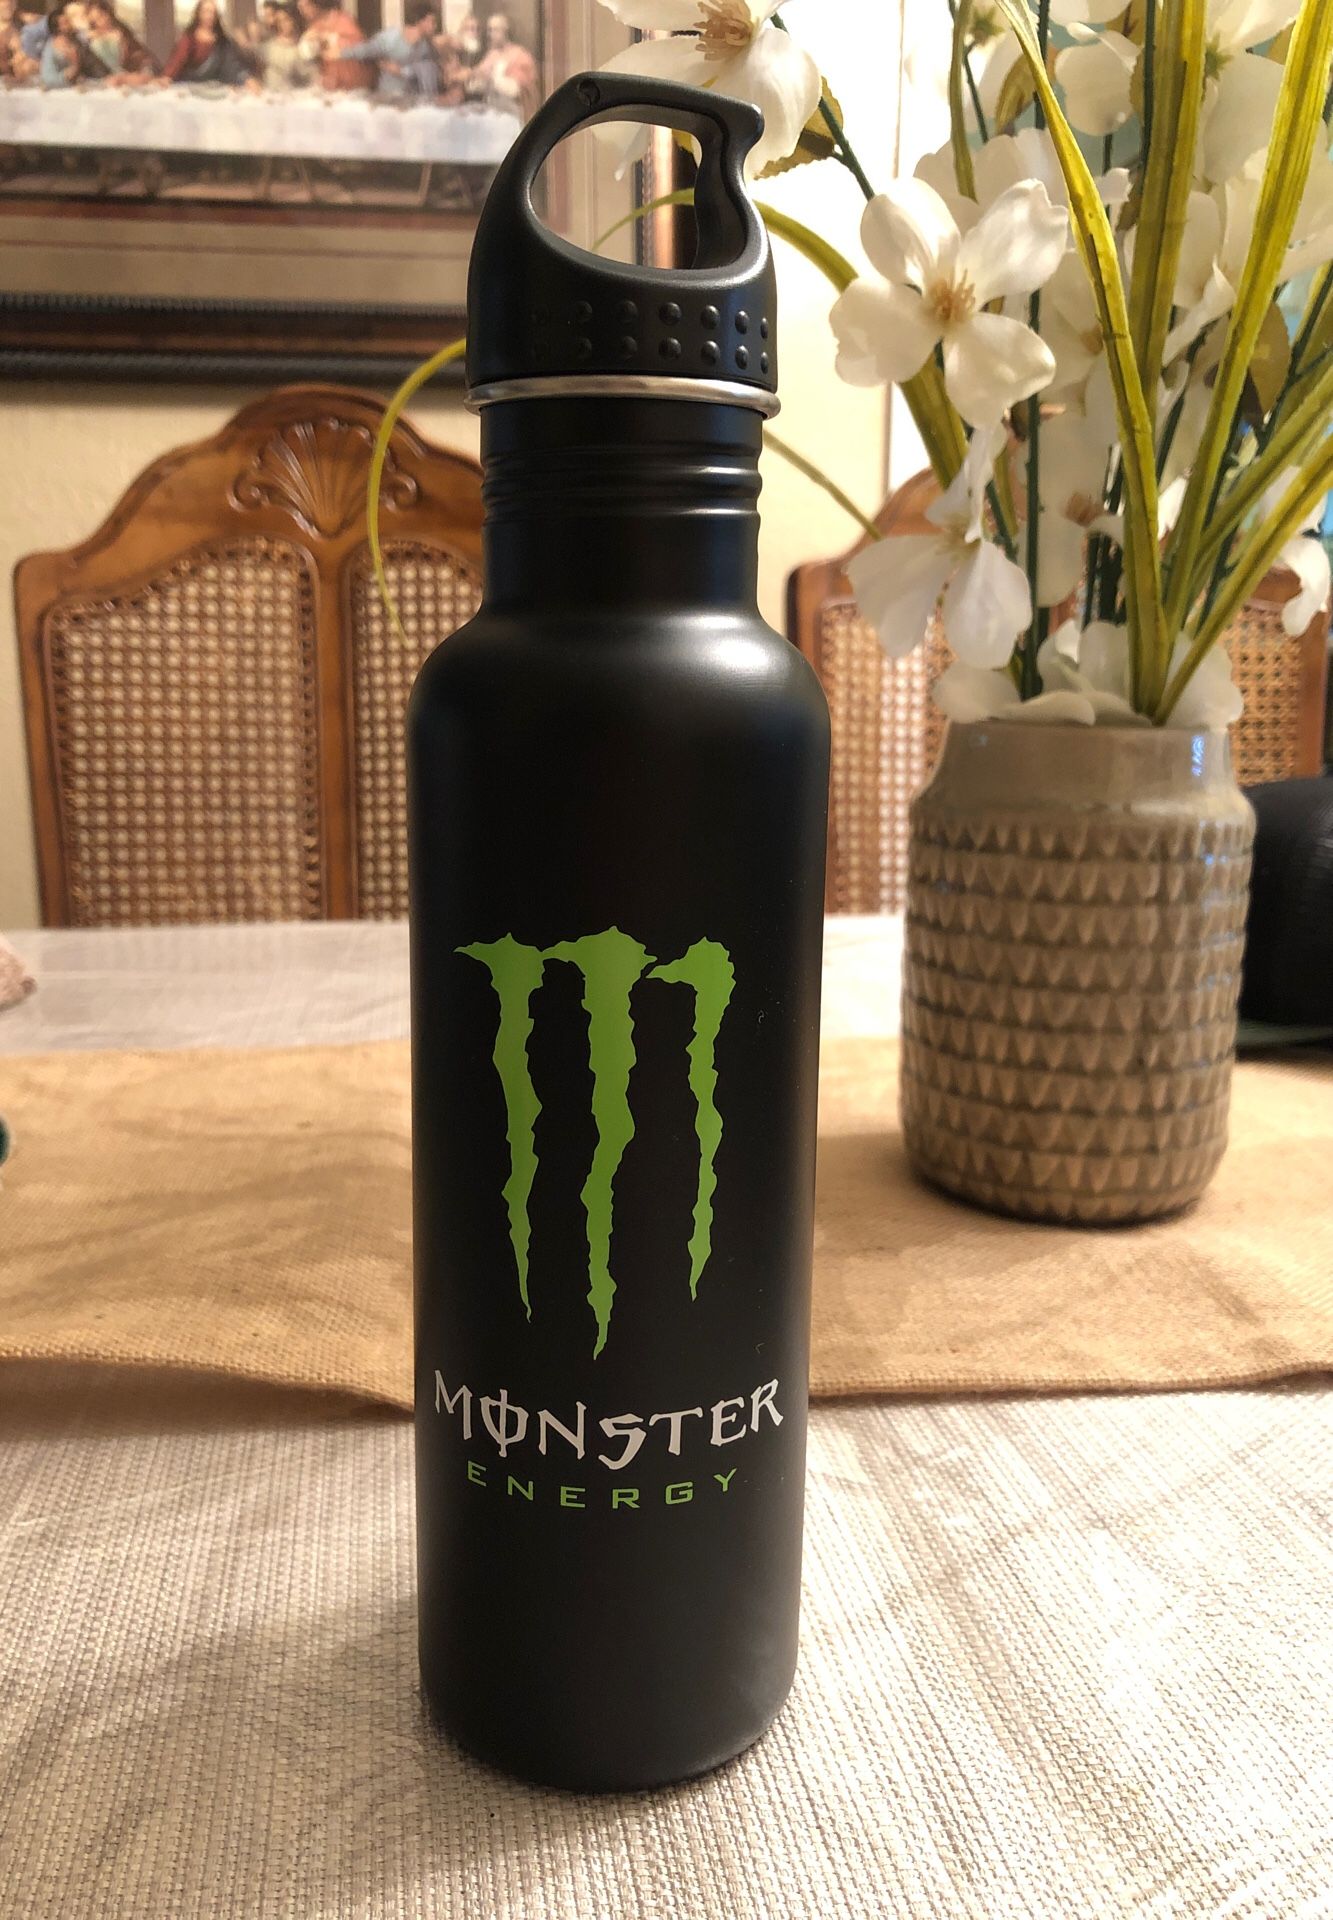 Monster Energy stainless steel water bottle